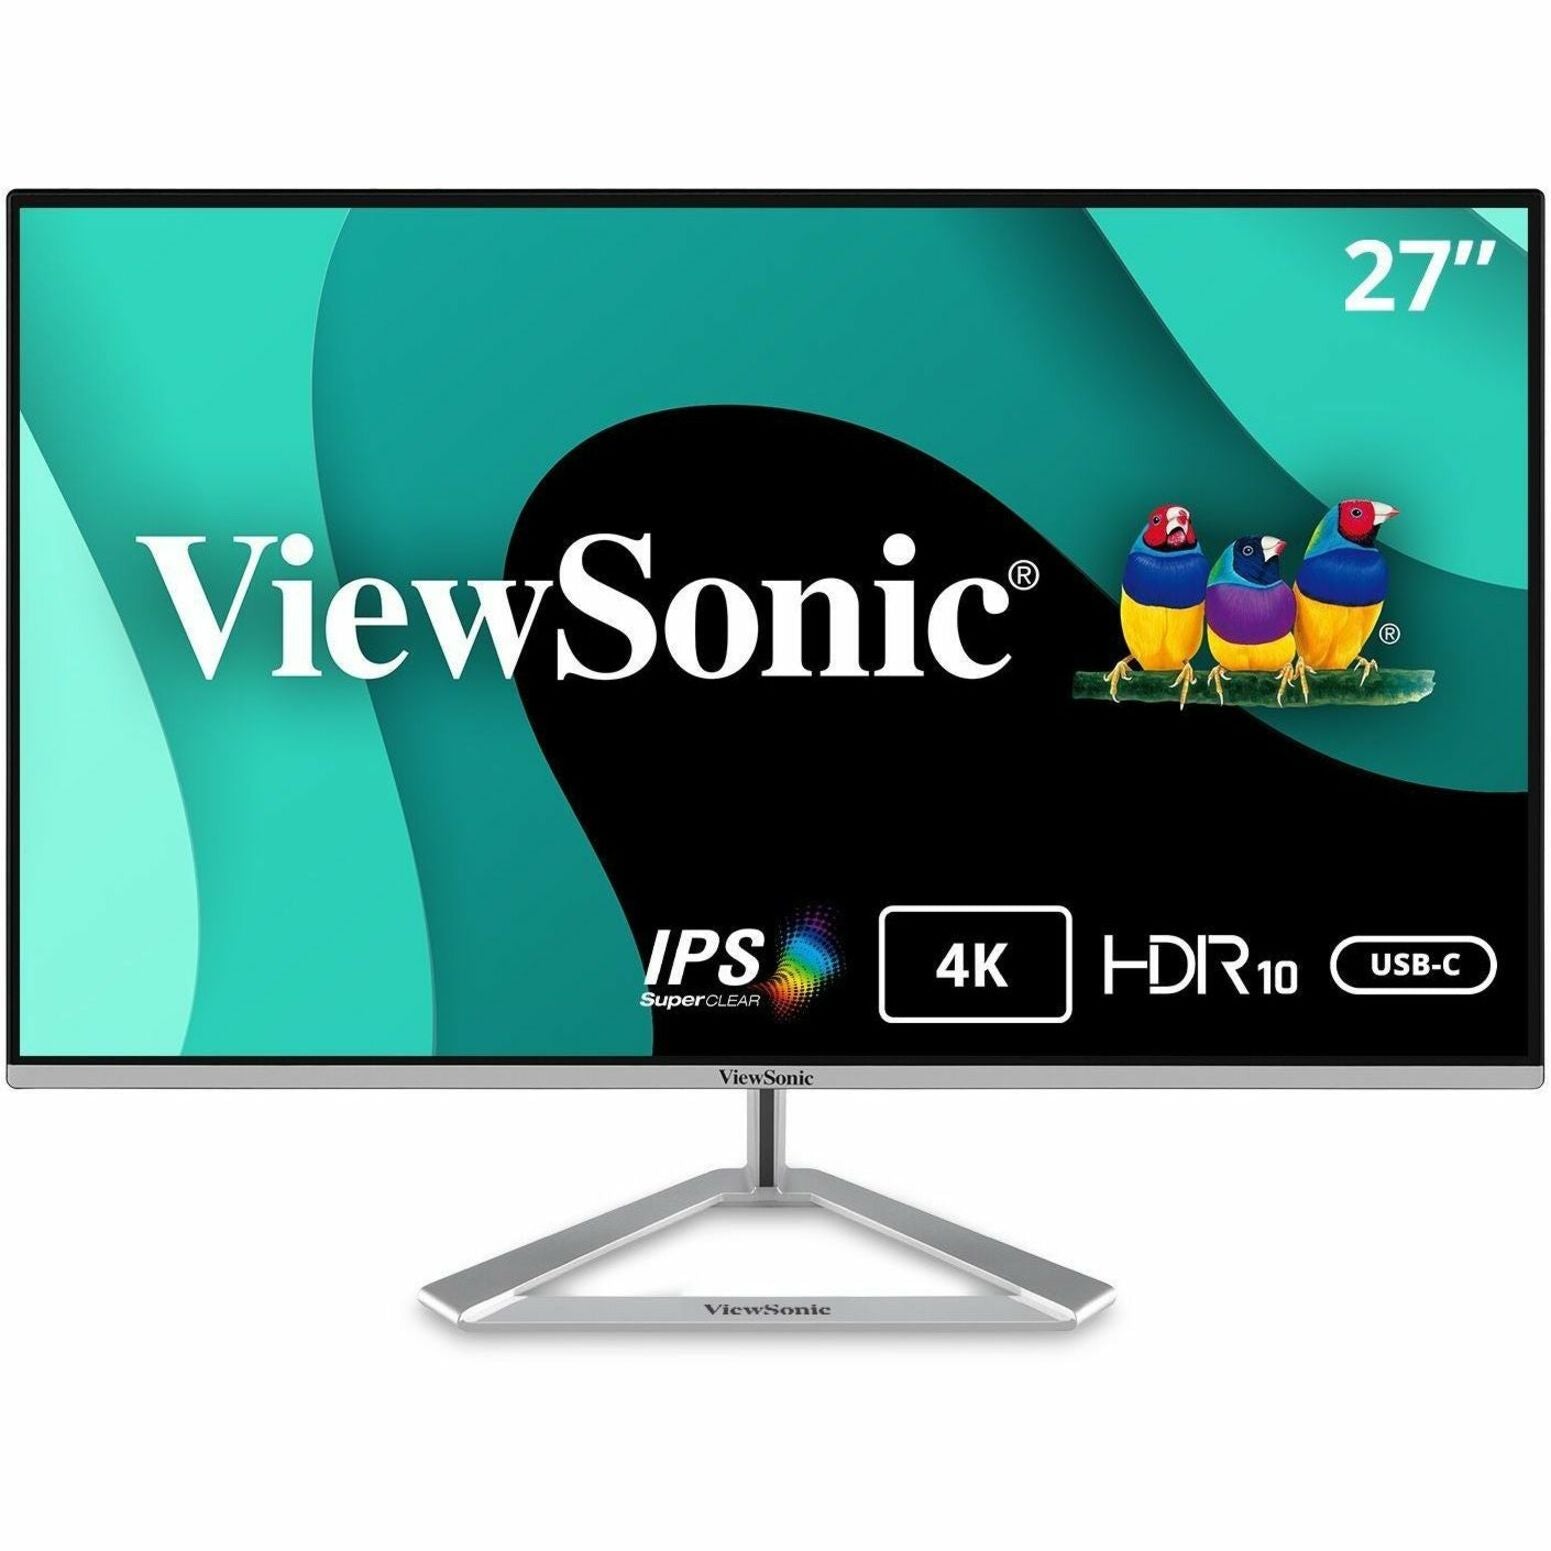 شاشة ViewSonic VX2776-4K-MHDU 27 بوصة 4K UHD نحيفة الحافة IPS مع USB-C، HDMI، و DisplayPort، زمن الاستجابة 1 مللي ثانية، سطوع 350 نيت، 1.07 مليار لون - العلامة التجارية: ViewSonic